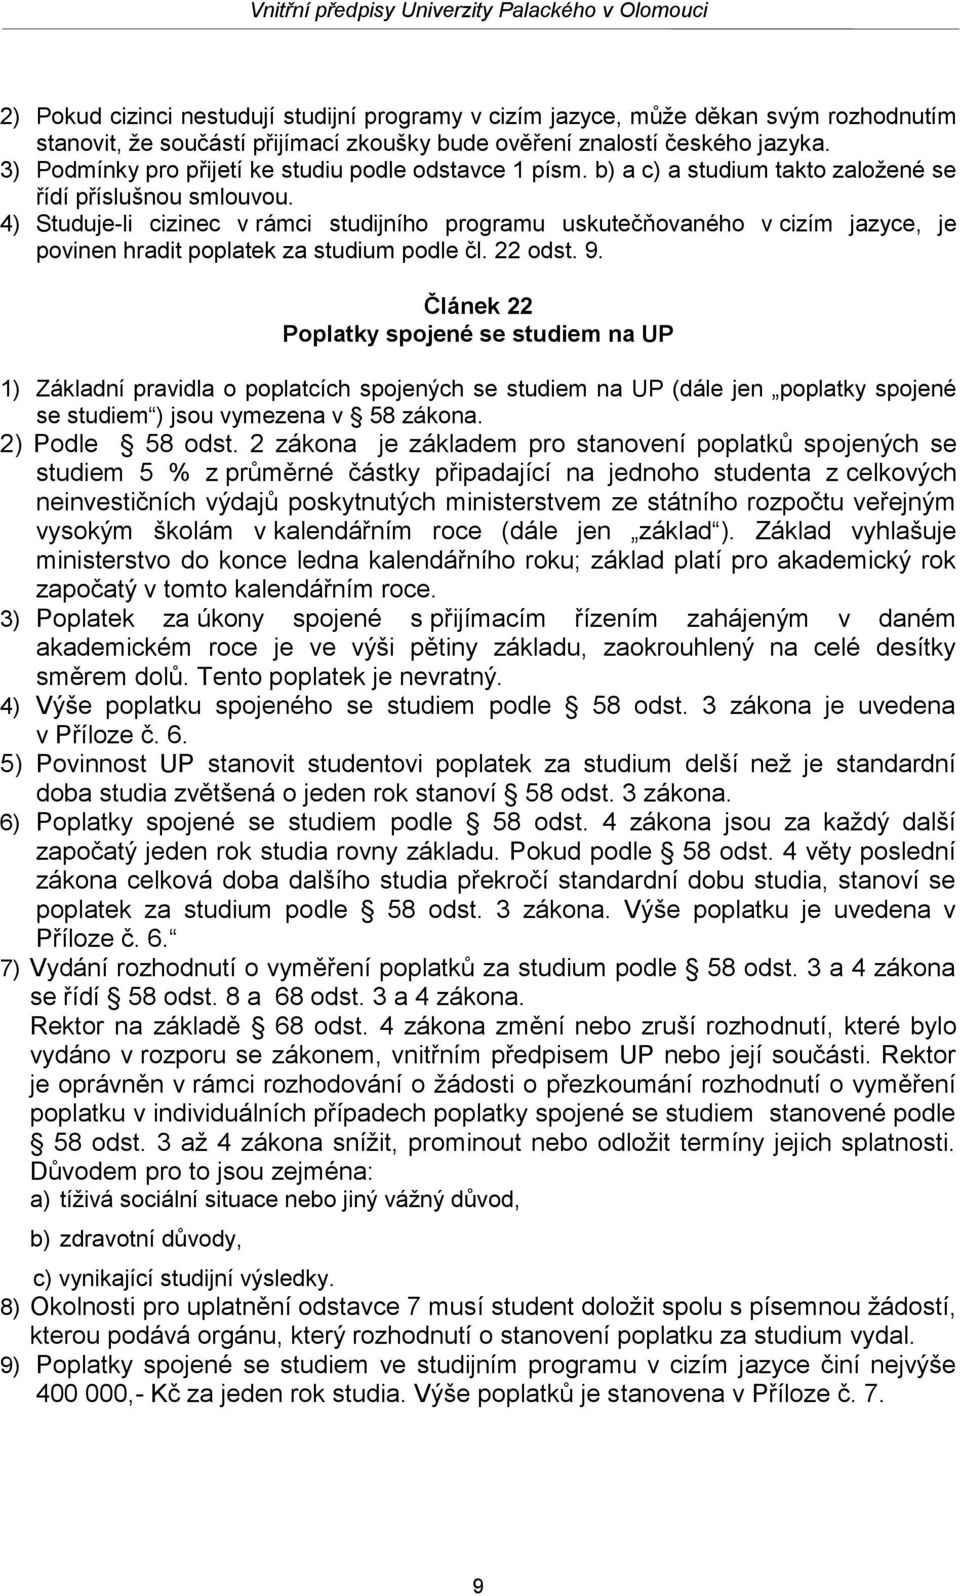 4) Studuje-li cizinec v rámci studijního programu uskutečňovaného v cizím jazyce, je povinen hradit poplatek za studium podle čl. 22 odst. 9.